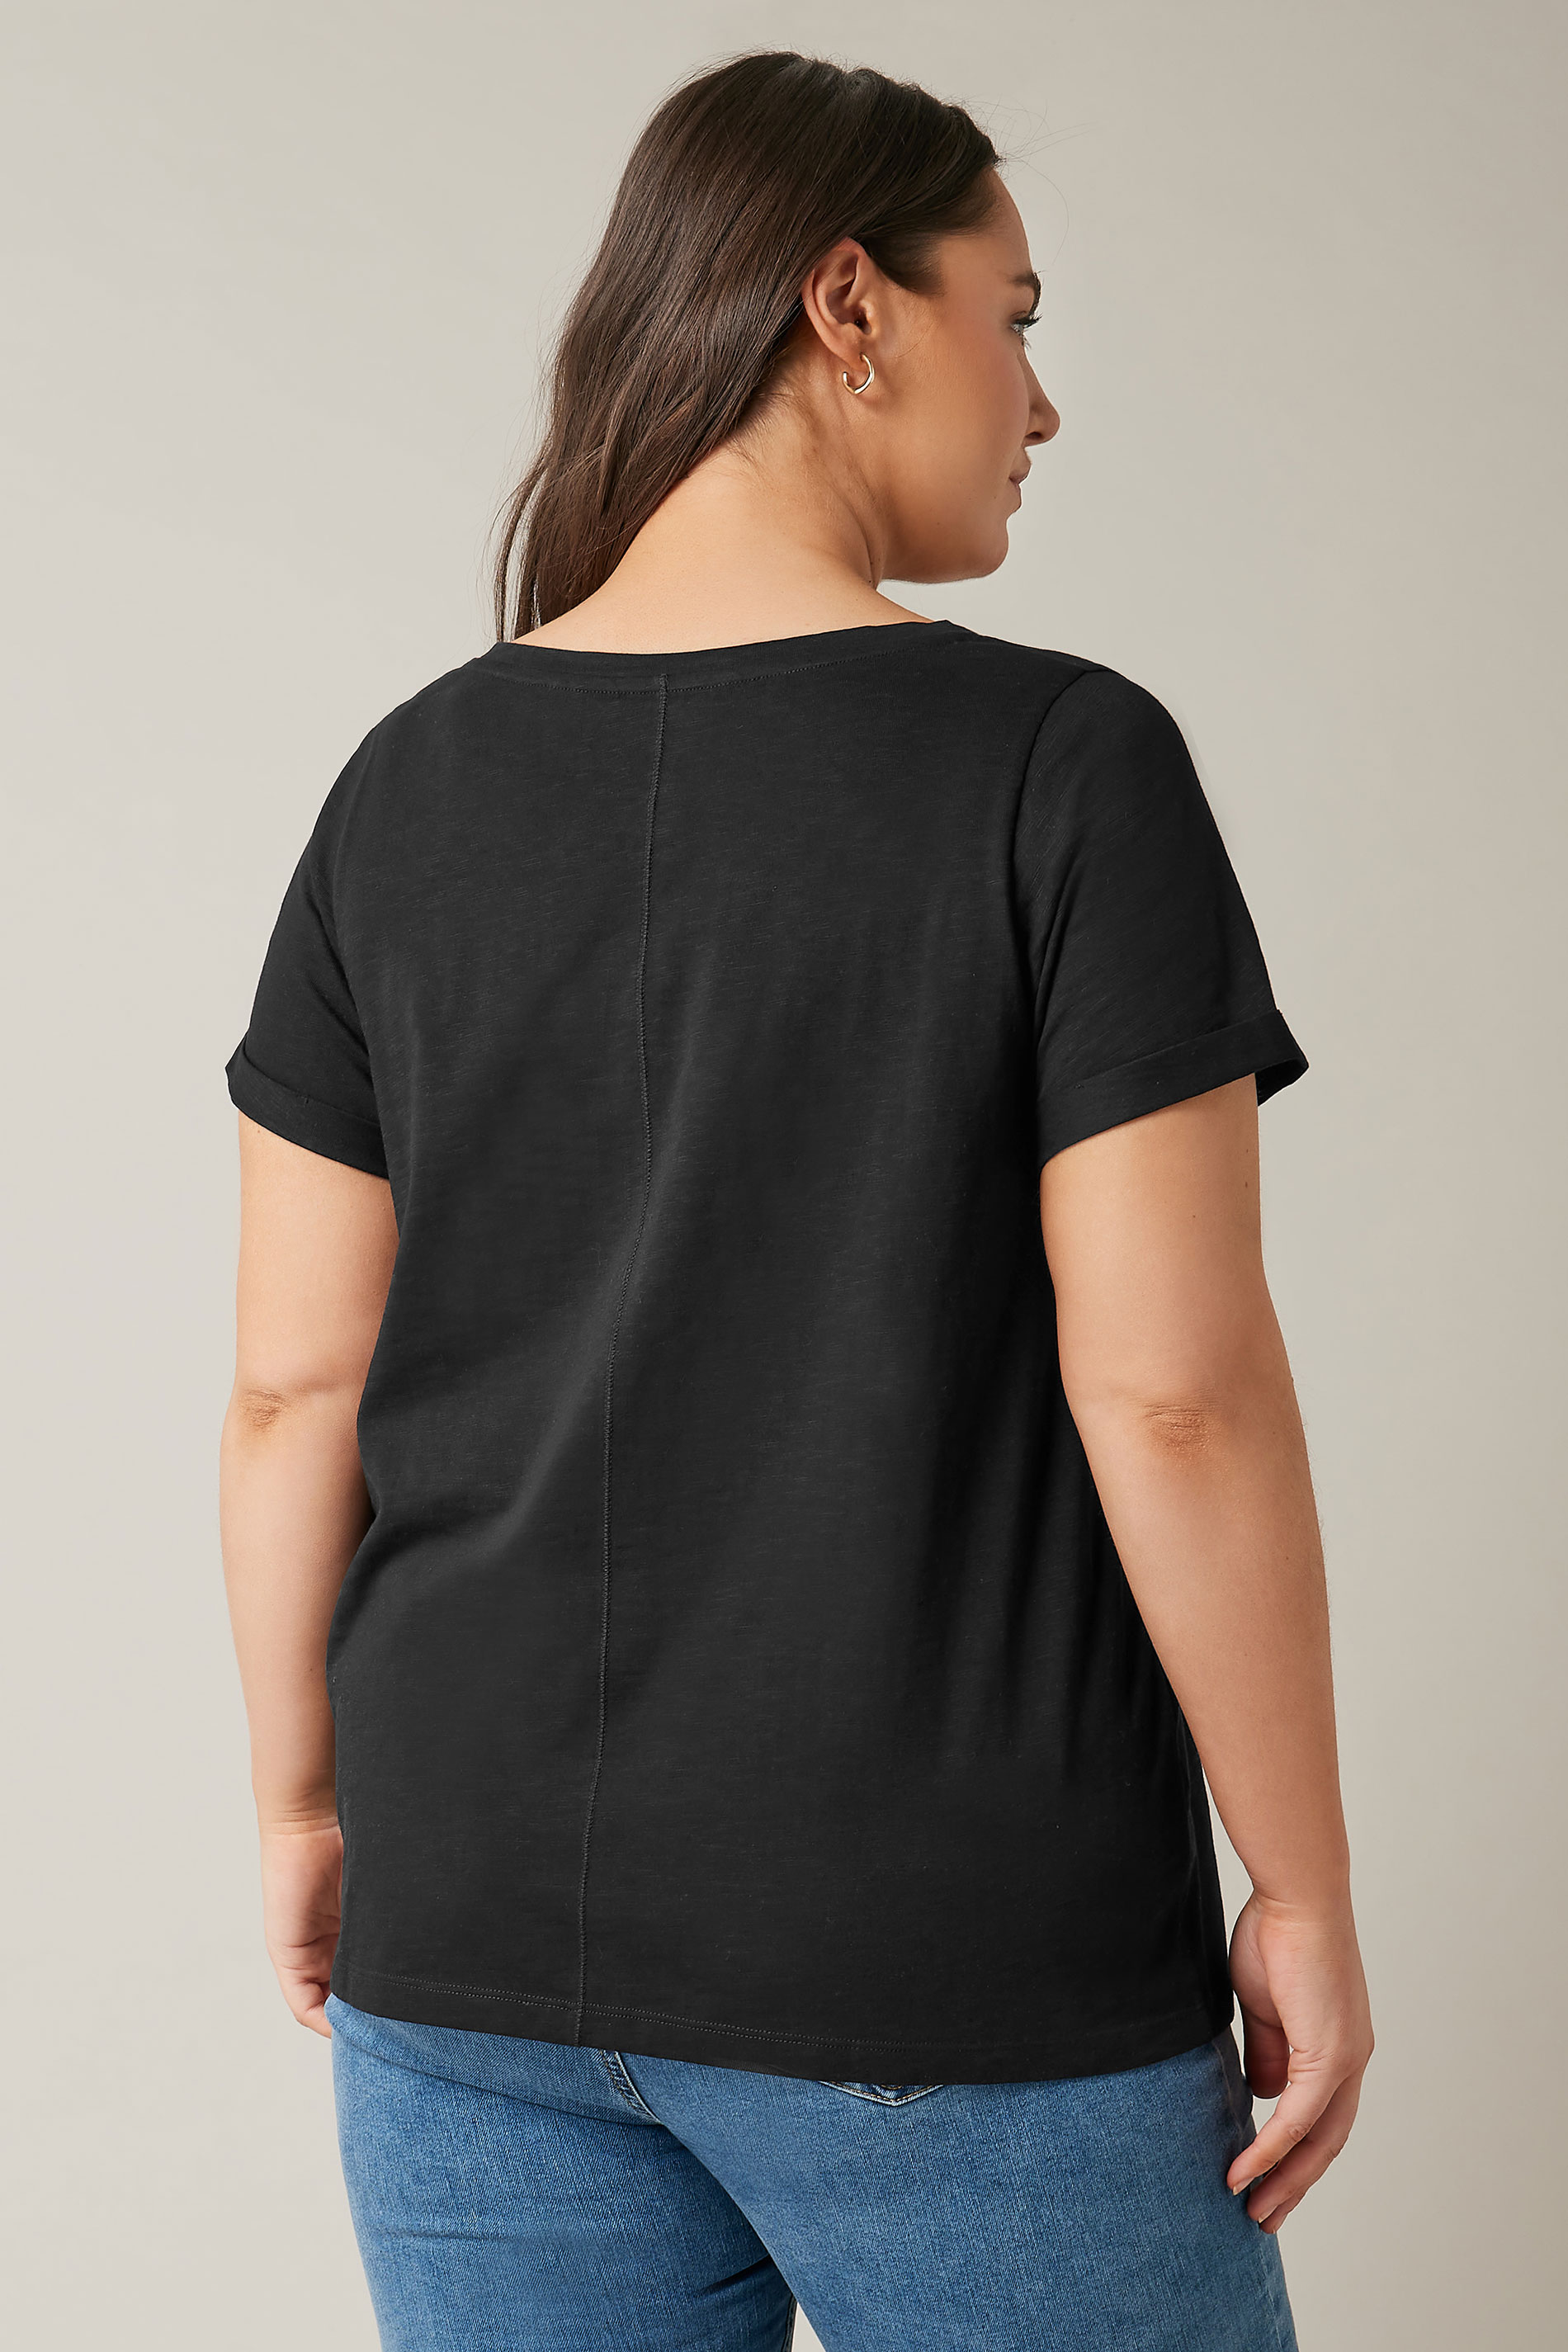 EVANS Plus Size Black Pure Cotton T-Shirt | Yours Curve 3